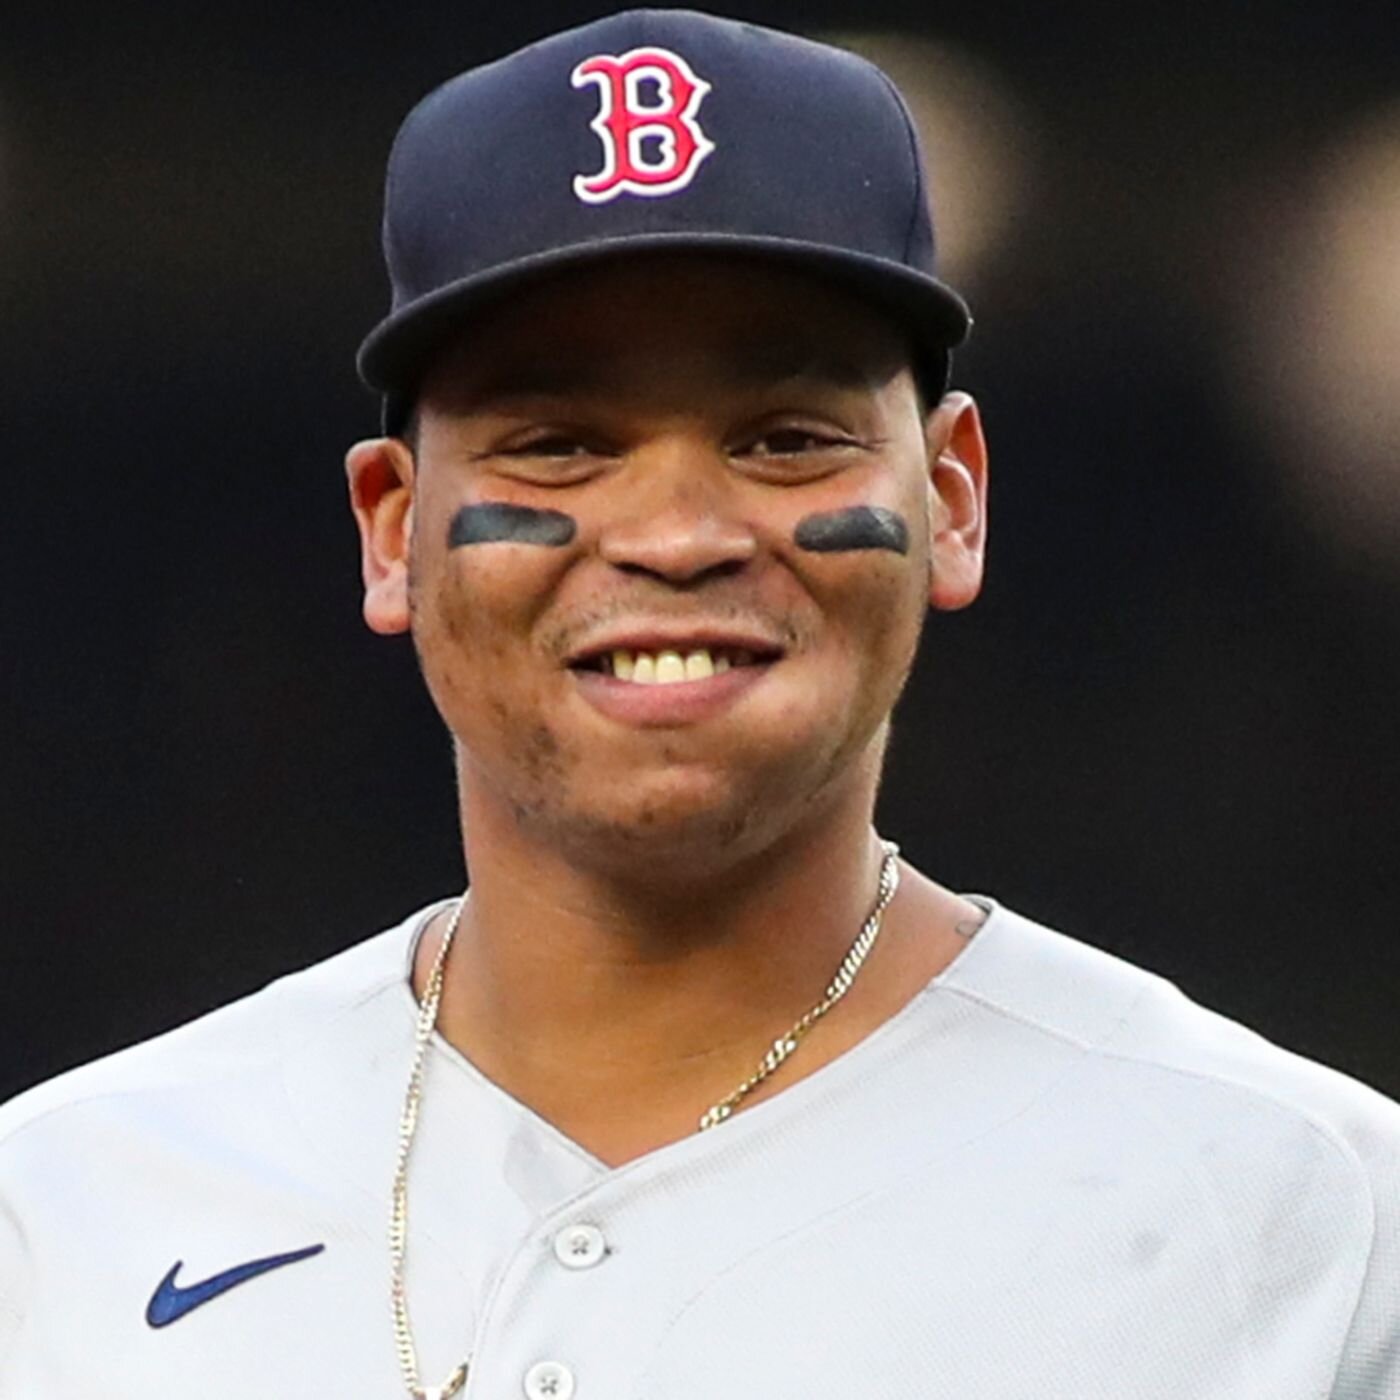 Un tercer baseman All-Star para los Boston Red Sox obtiene un logro de $4.6 millones.